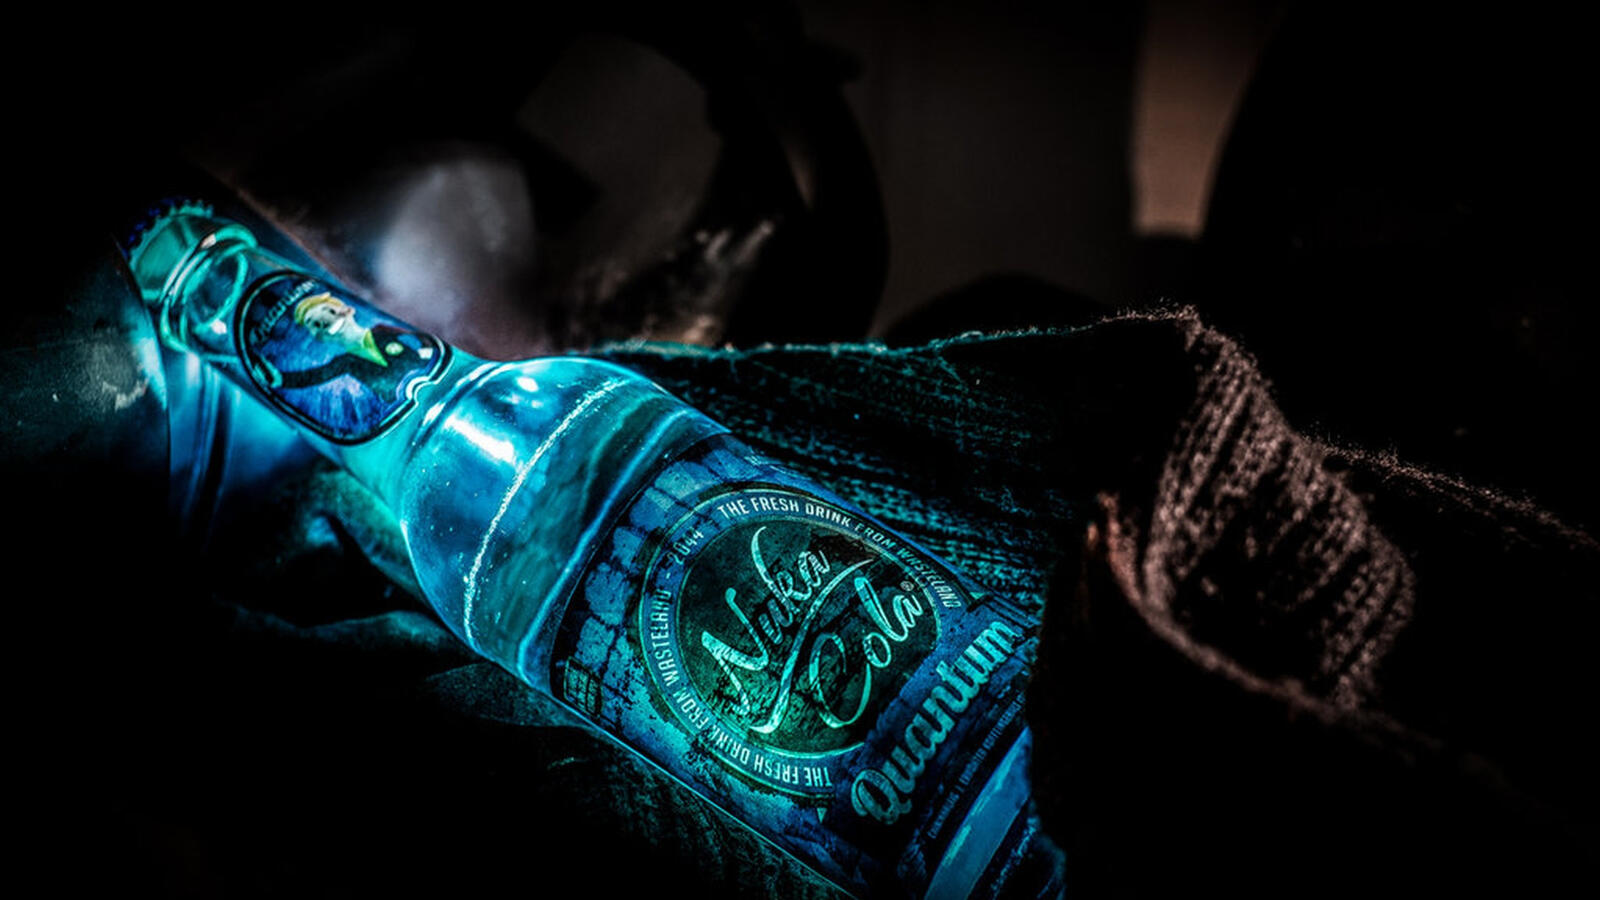 Бесплатное фото Голубая бутылка nuka cola quantum